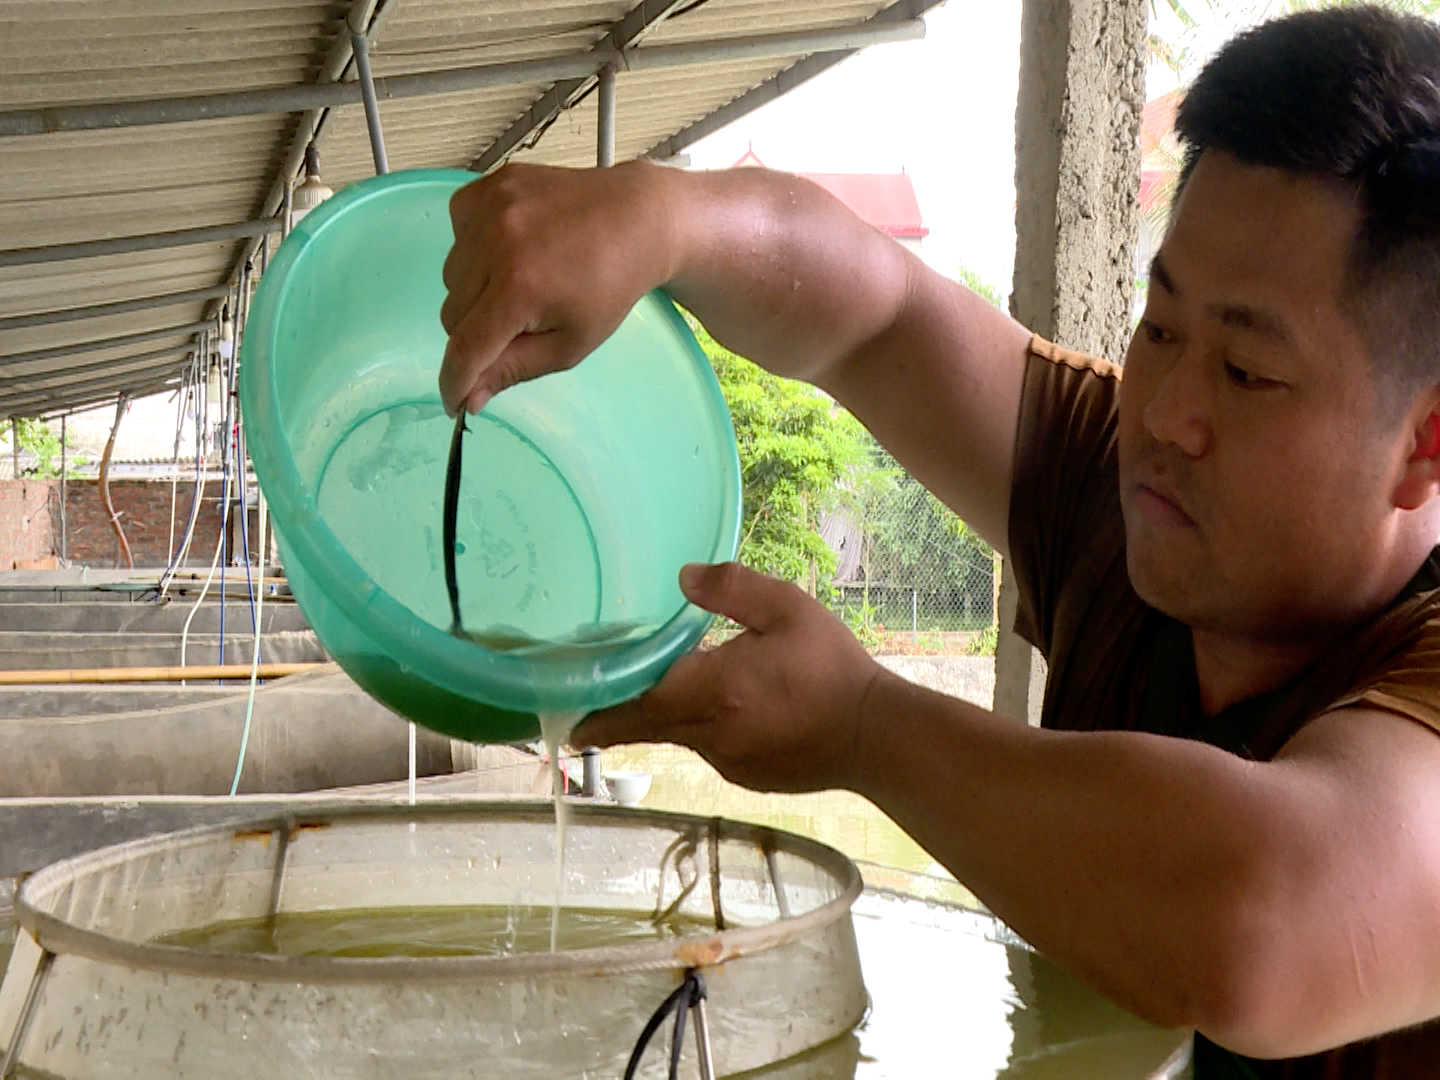 Bắc Ninh: Ứng dụng công nghệ vào sản xuất cá giống, tạo hiệu quả bất ngờ - Ảnh 2.